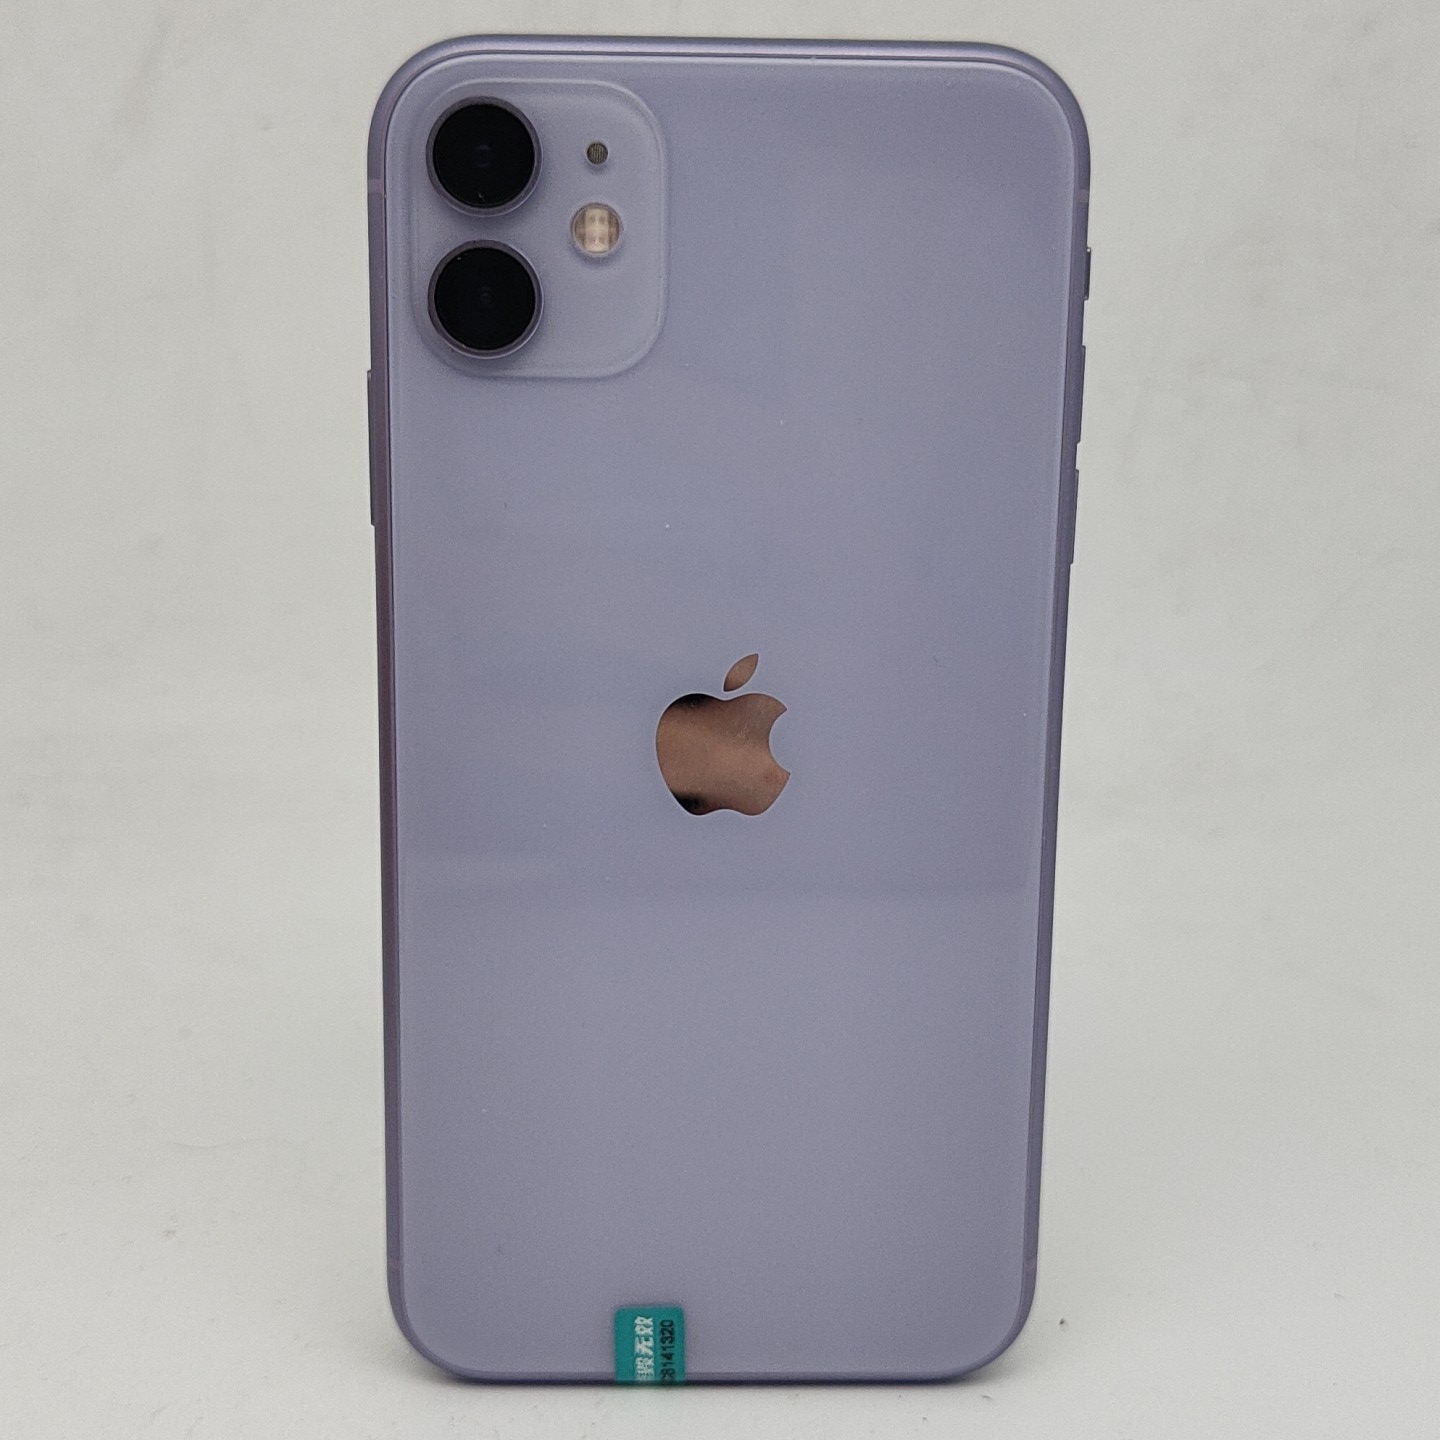 苹果【iPhone 11】紫色 64G 国行 9成新 